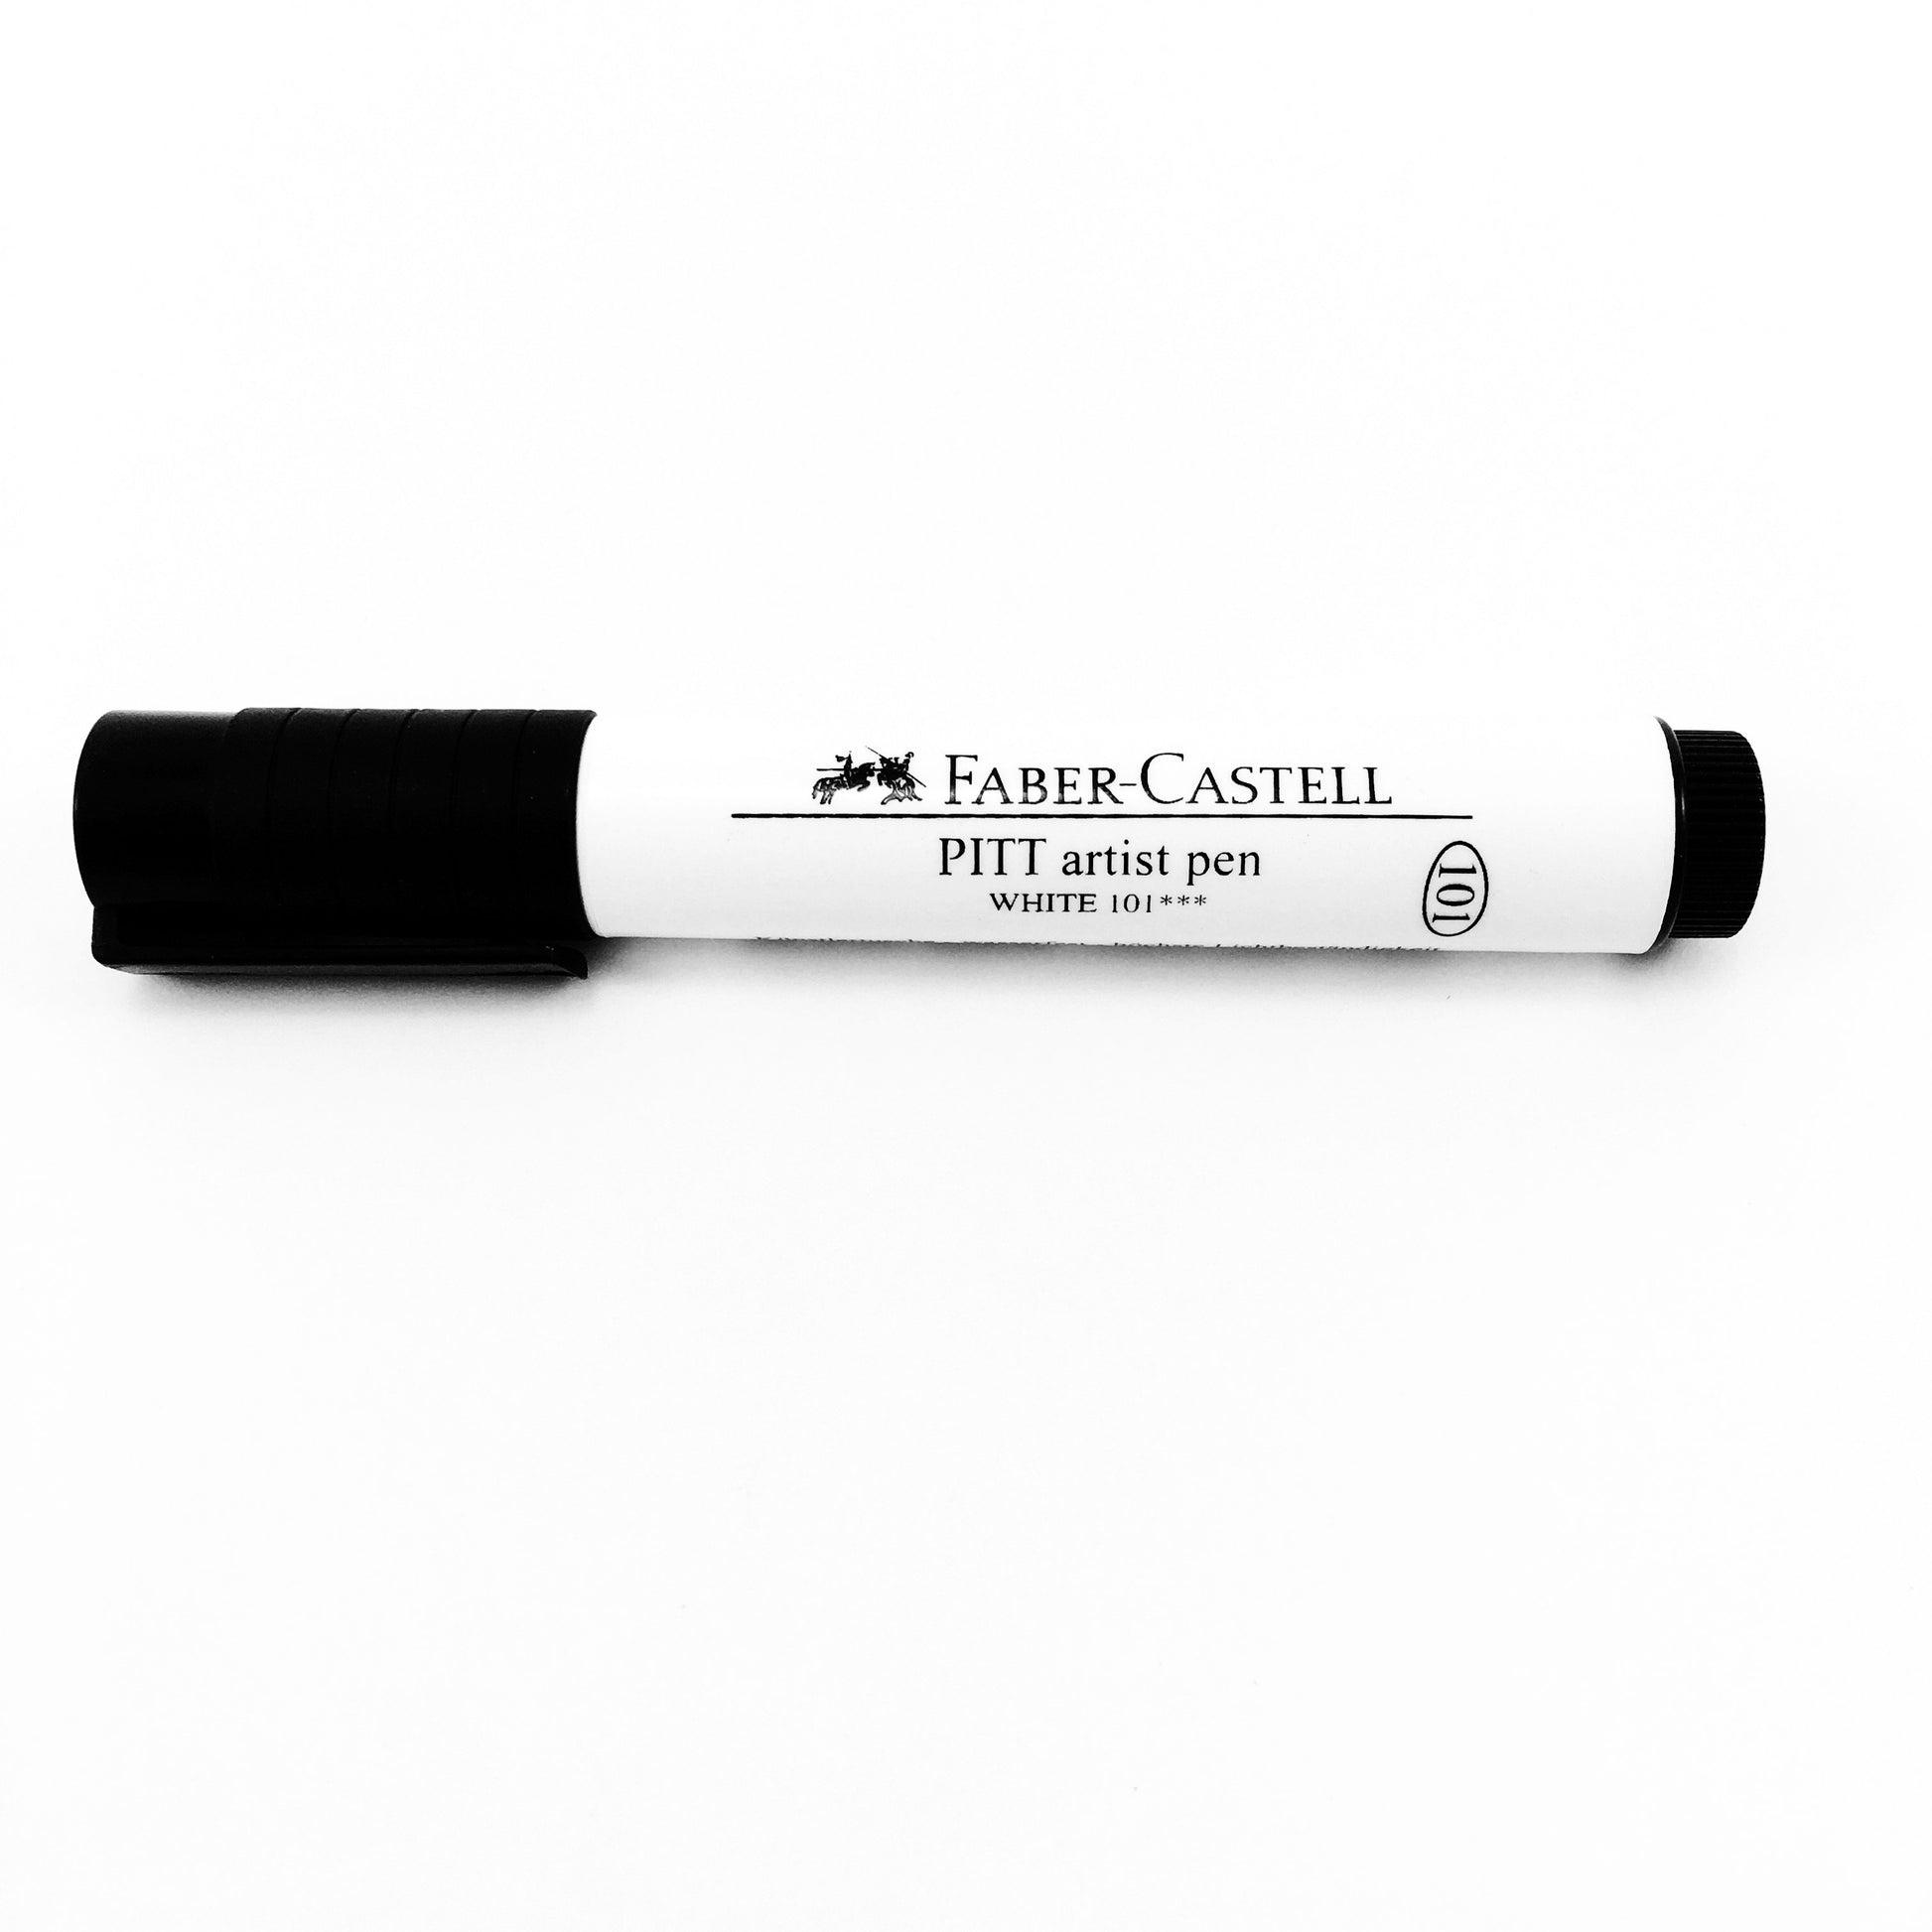 Faber-Castell Pitt Artist Pens 4-Count Black Set